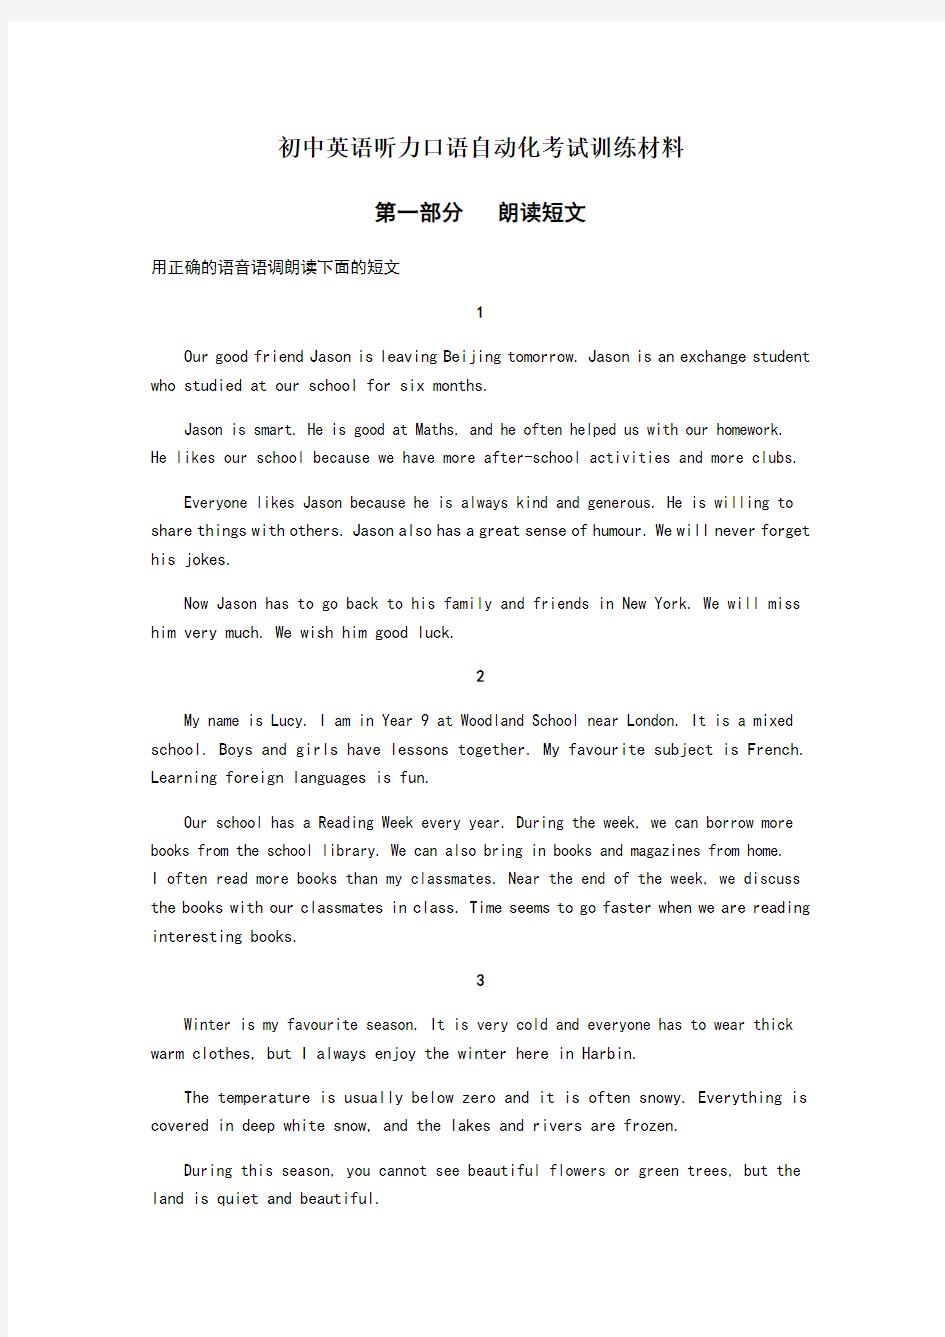 2020年江苏省人机对话考试口语训练材料(朗读短文)